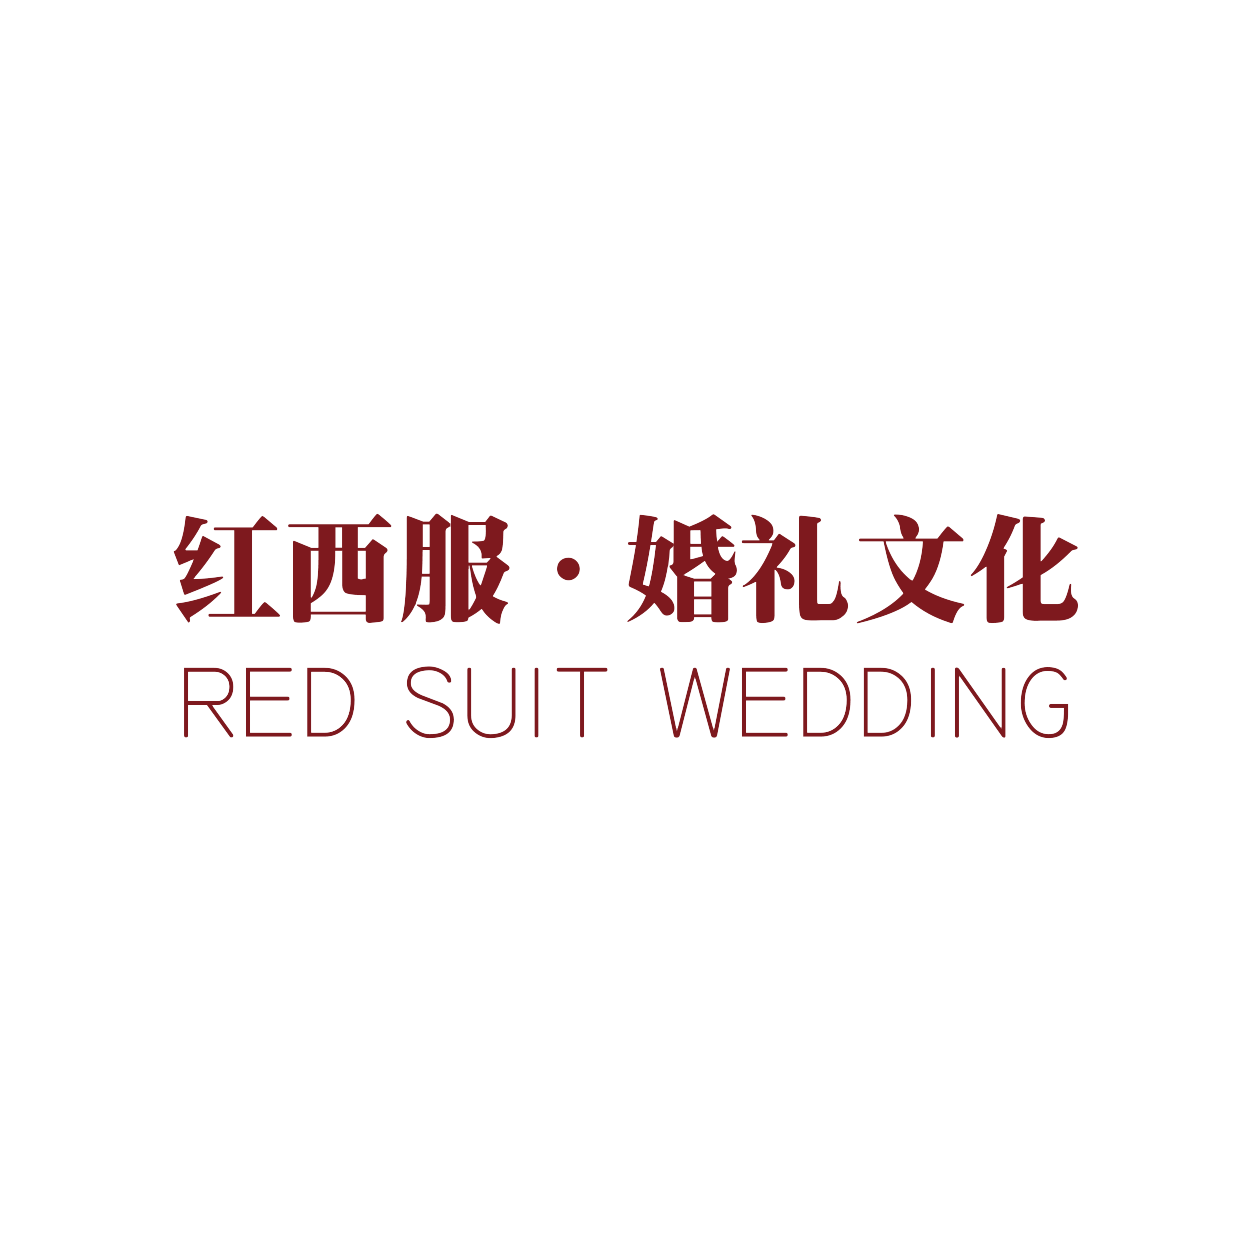 红西服婚礼文化